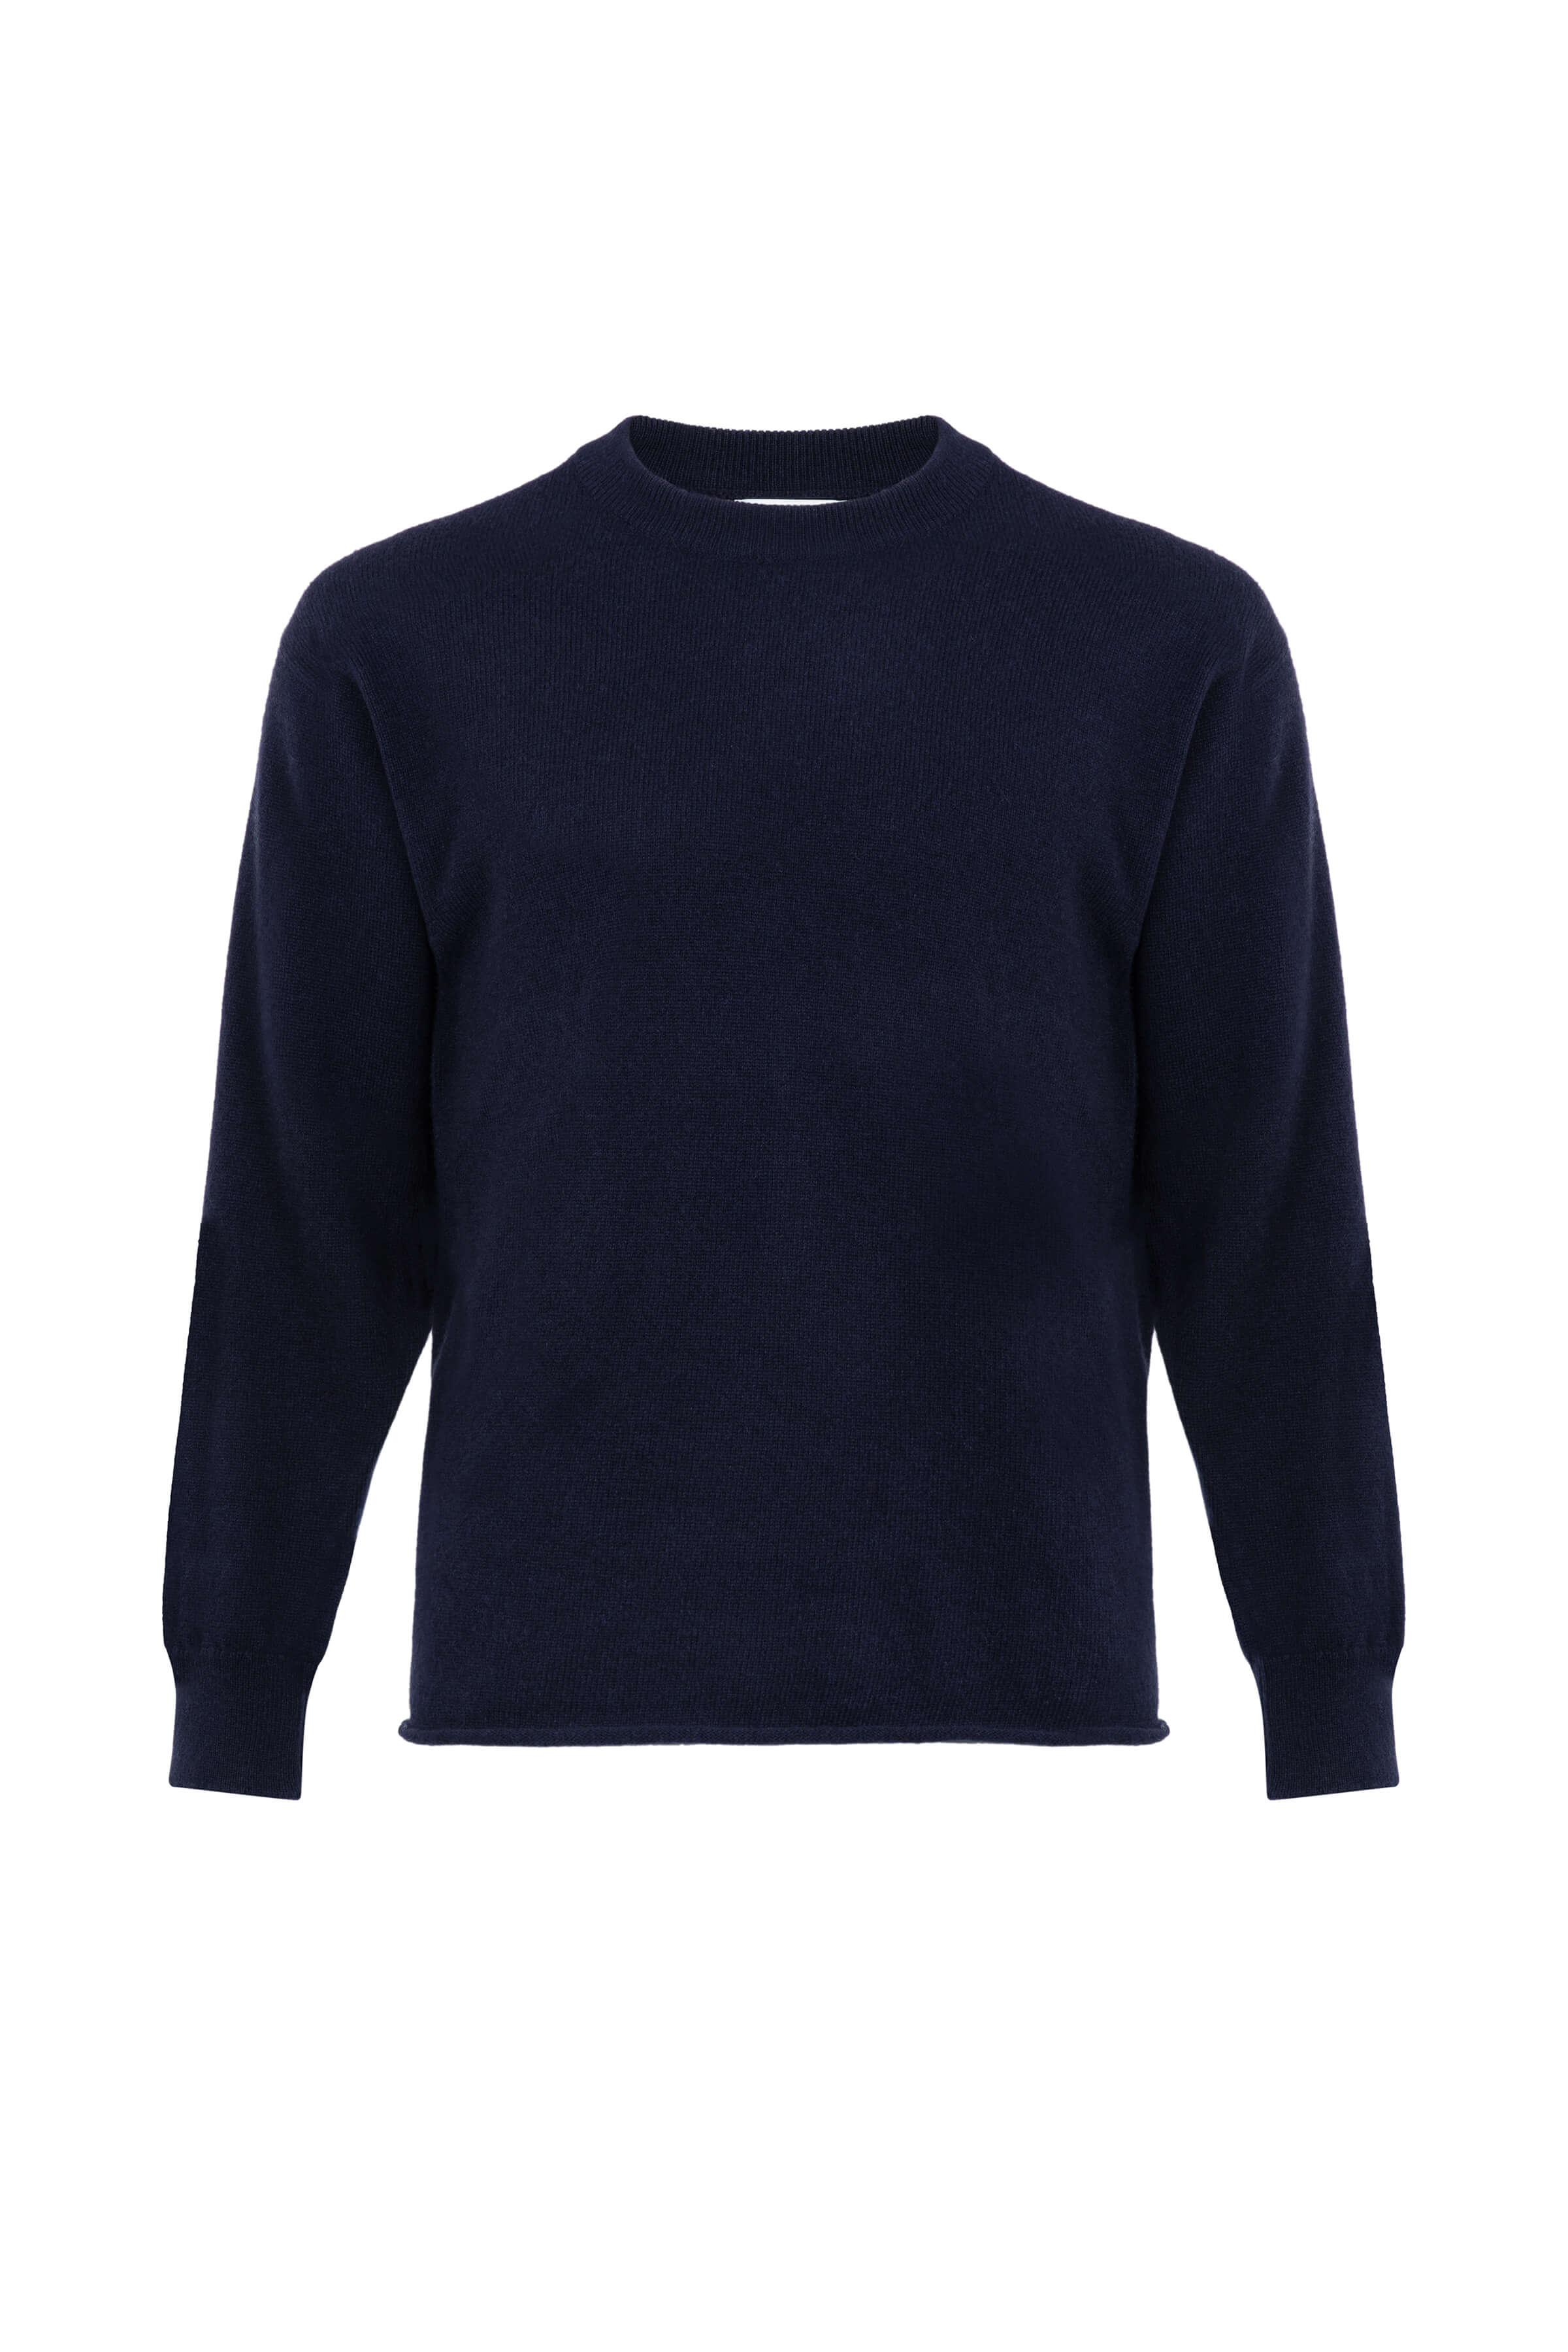 Drop Shoulder Men's Navy Cashmere Sweater – Johnstons of Elgin